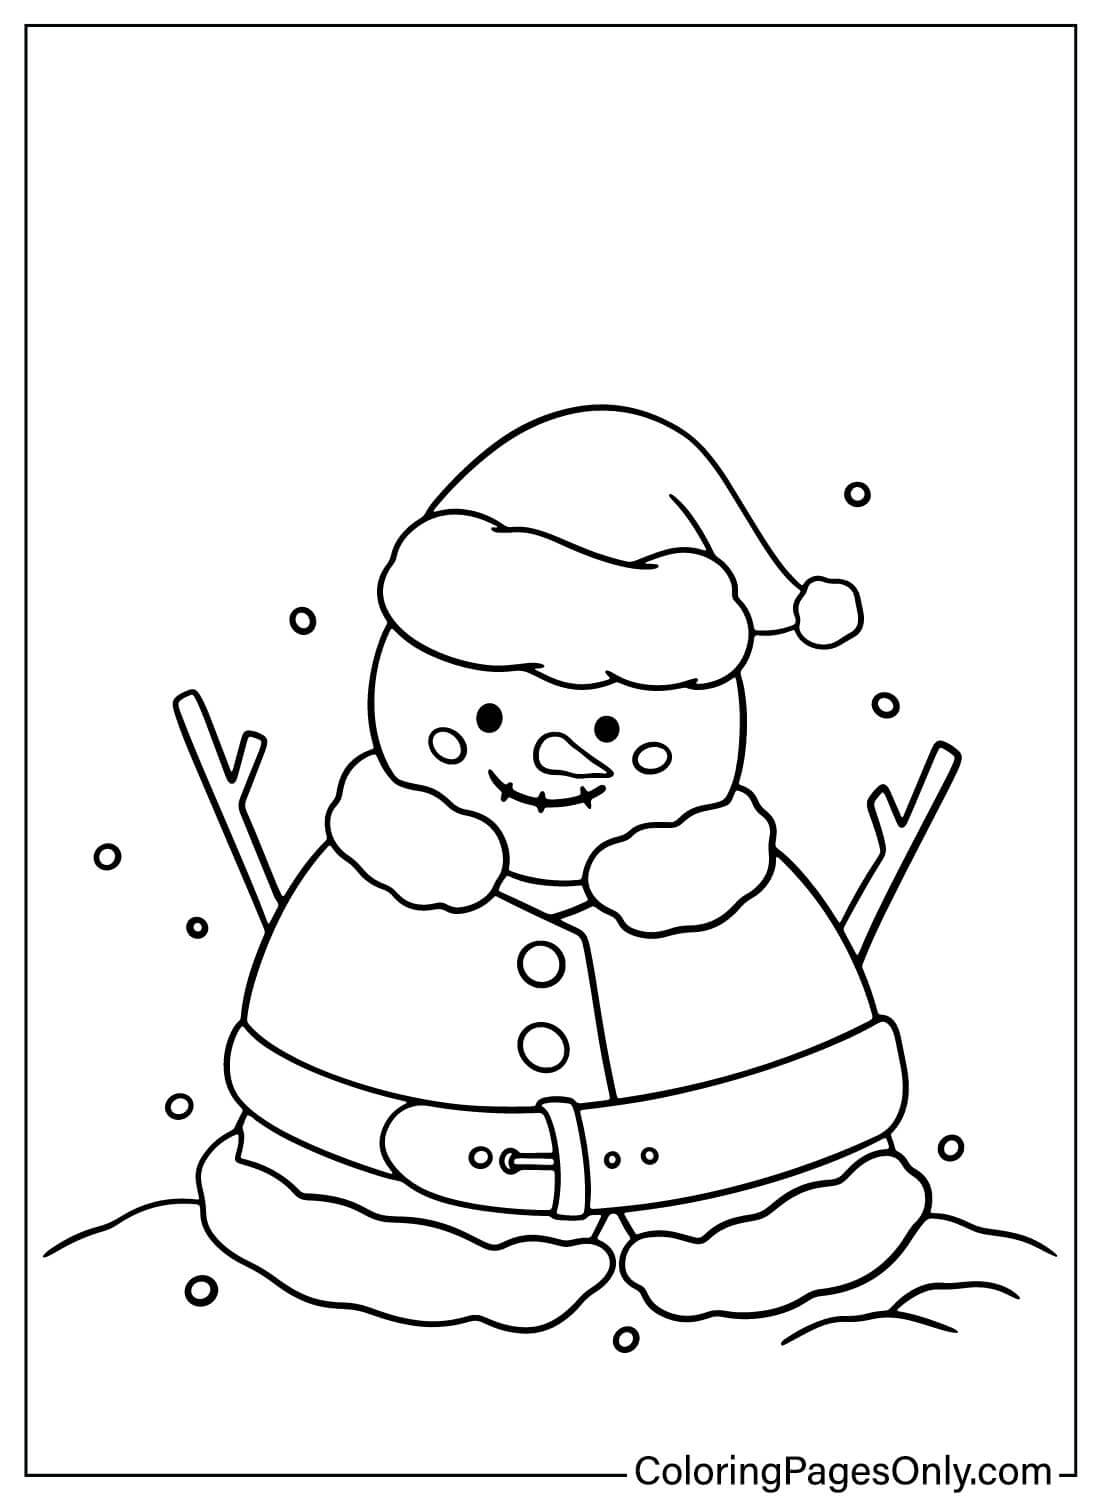 Pagina a colori stampabile del pupazzo di neve